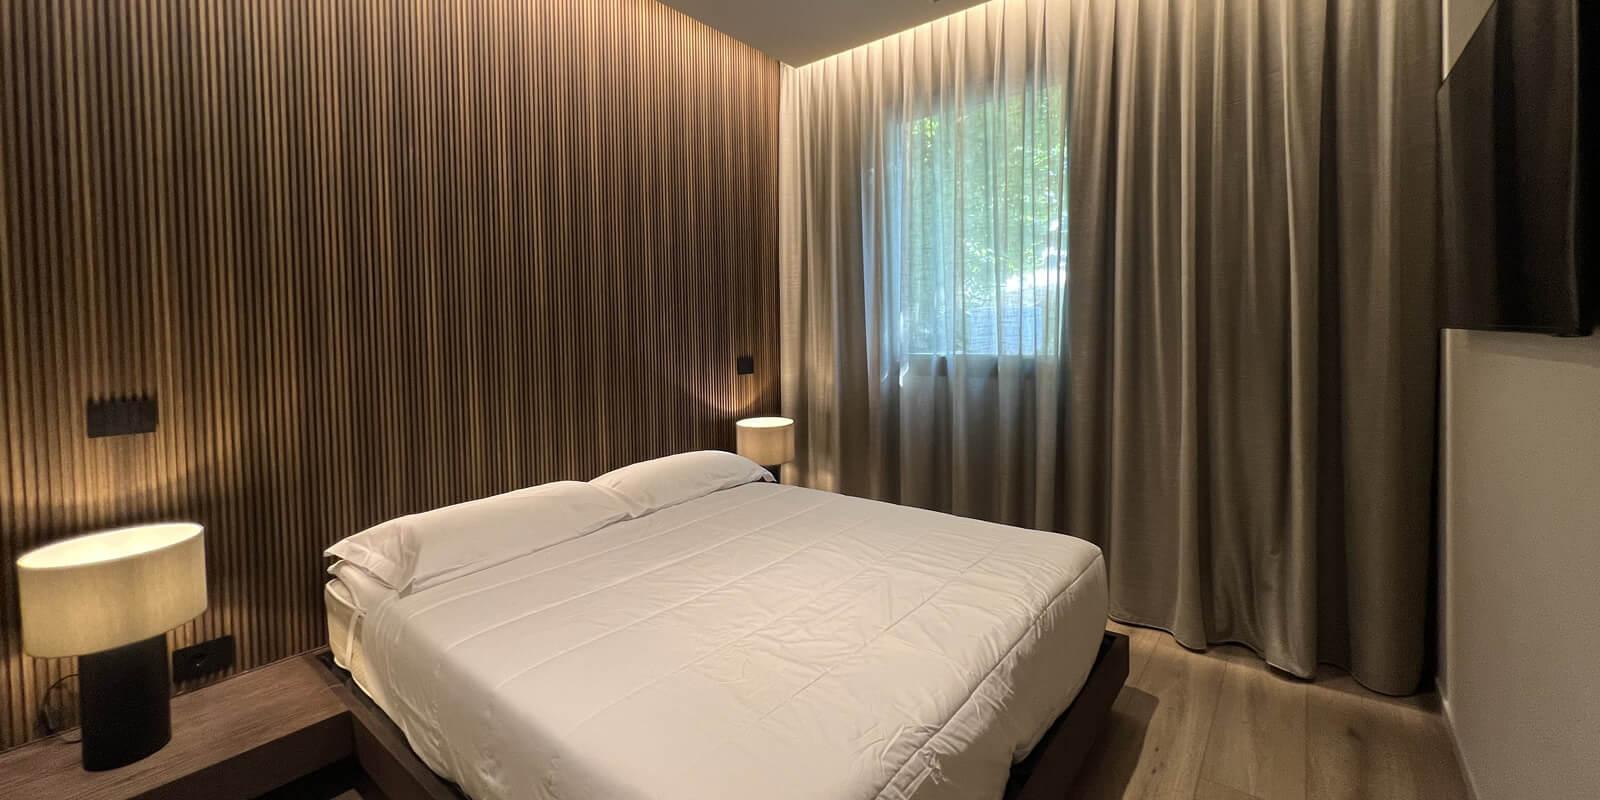 Camera da letto moderna con parete in legno, letto matrimoniale e lampade da comodino.